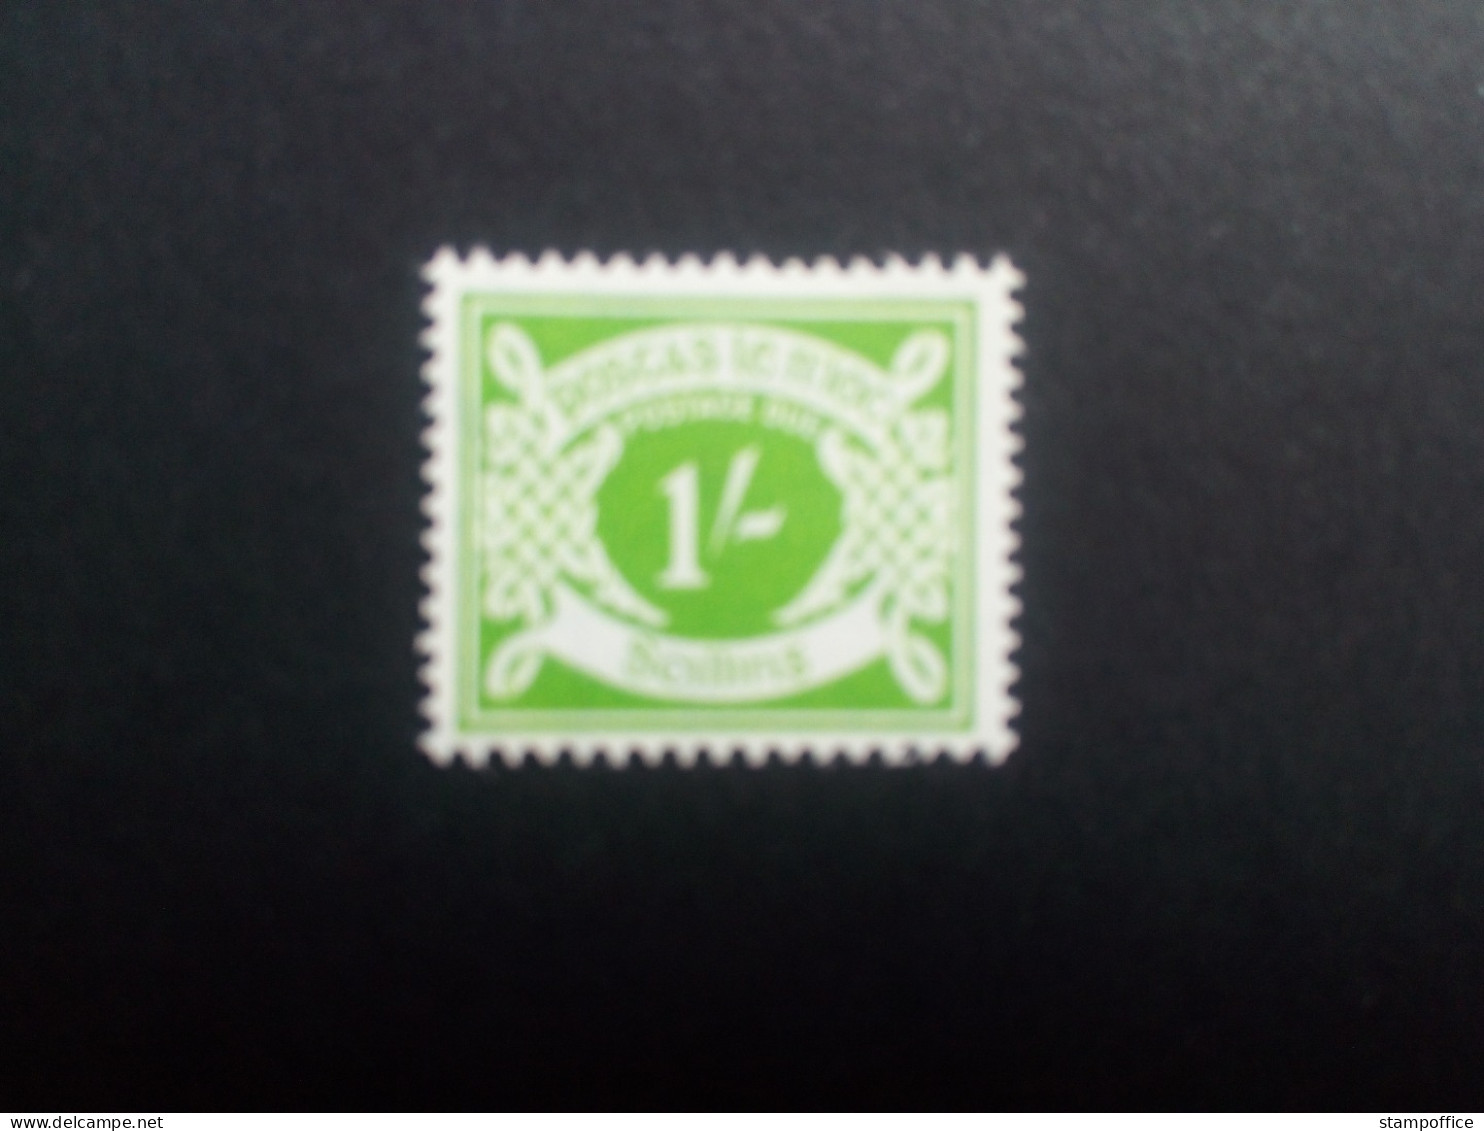 IRLAND PORTO MI-NR. 14 POSTFRISCH ZIFFERN 1969 - Timbres-taxe